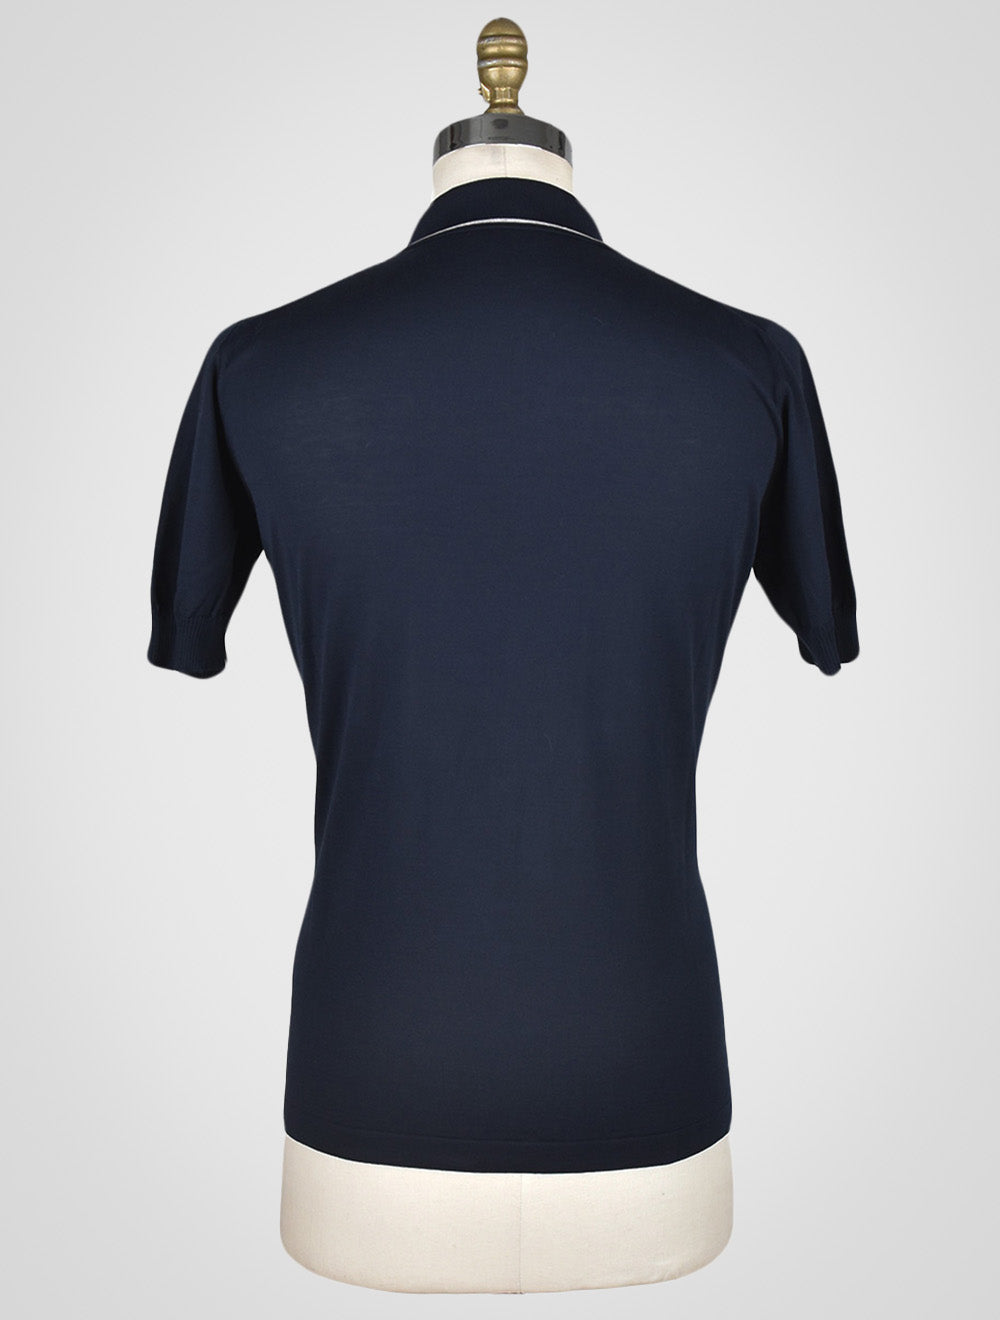 Хлопковая футболка-поло Fioroni синего цвета с молнией до половины